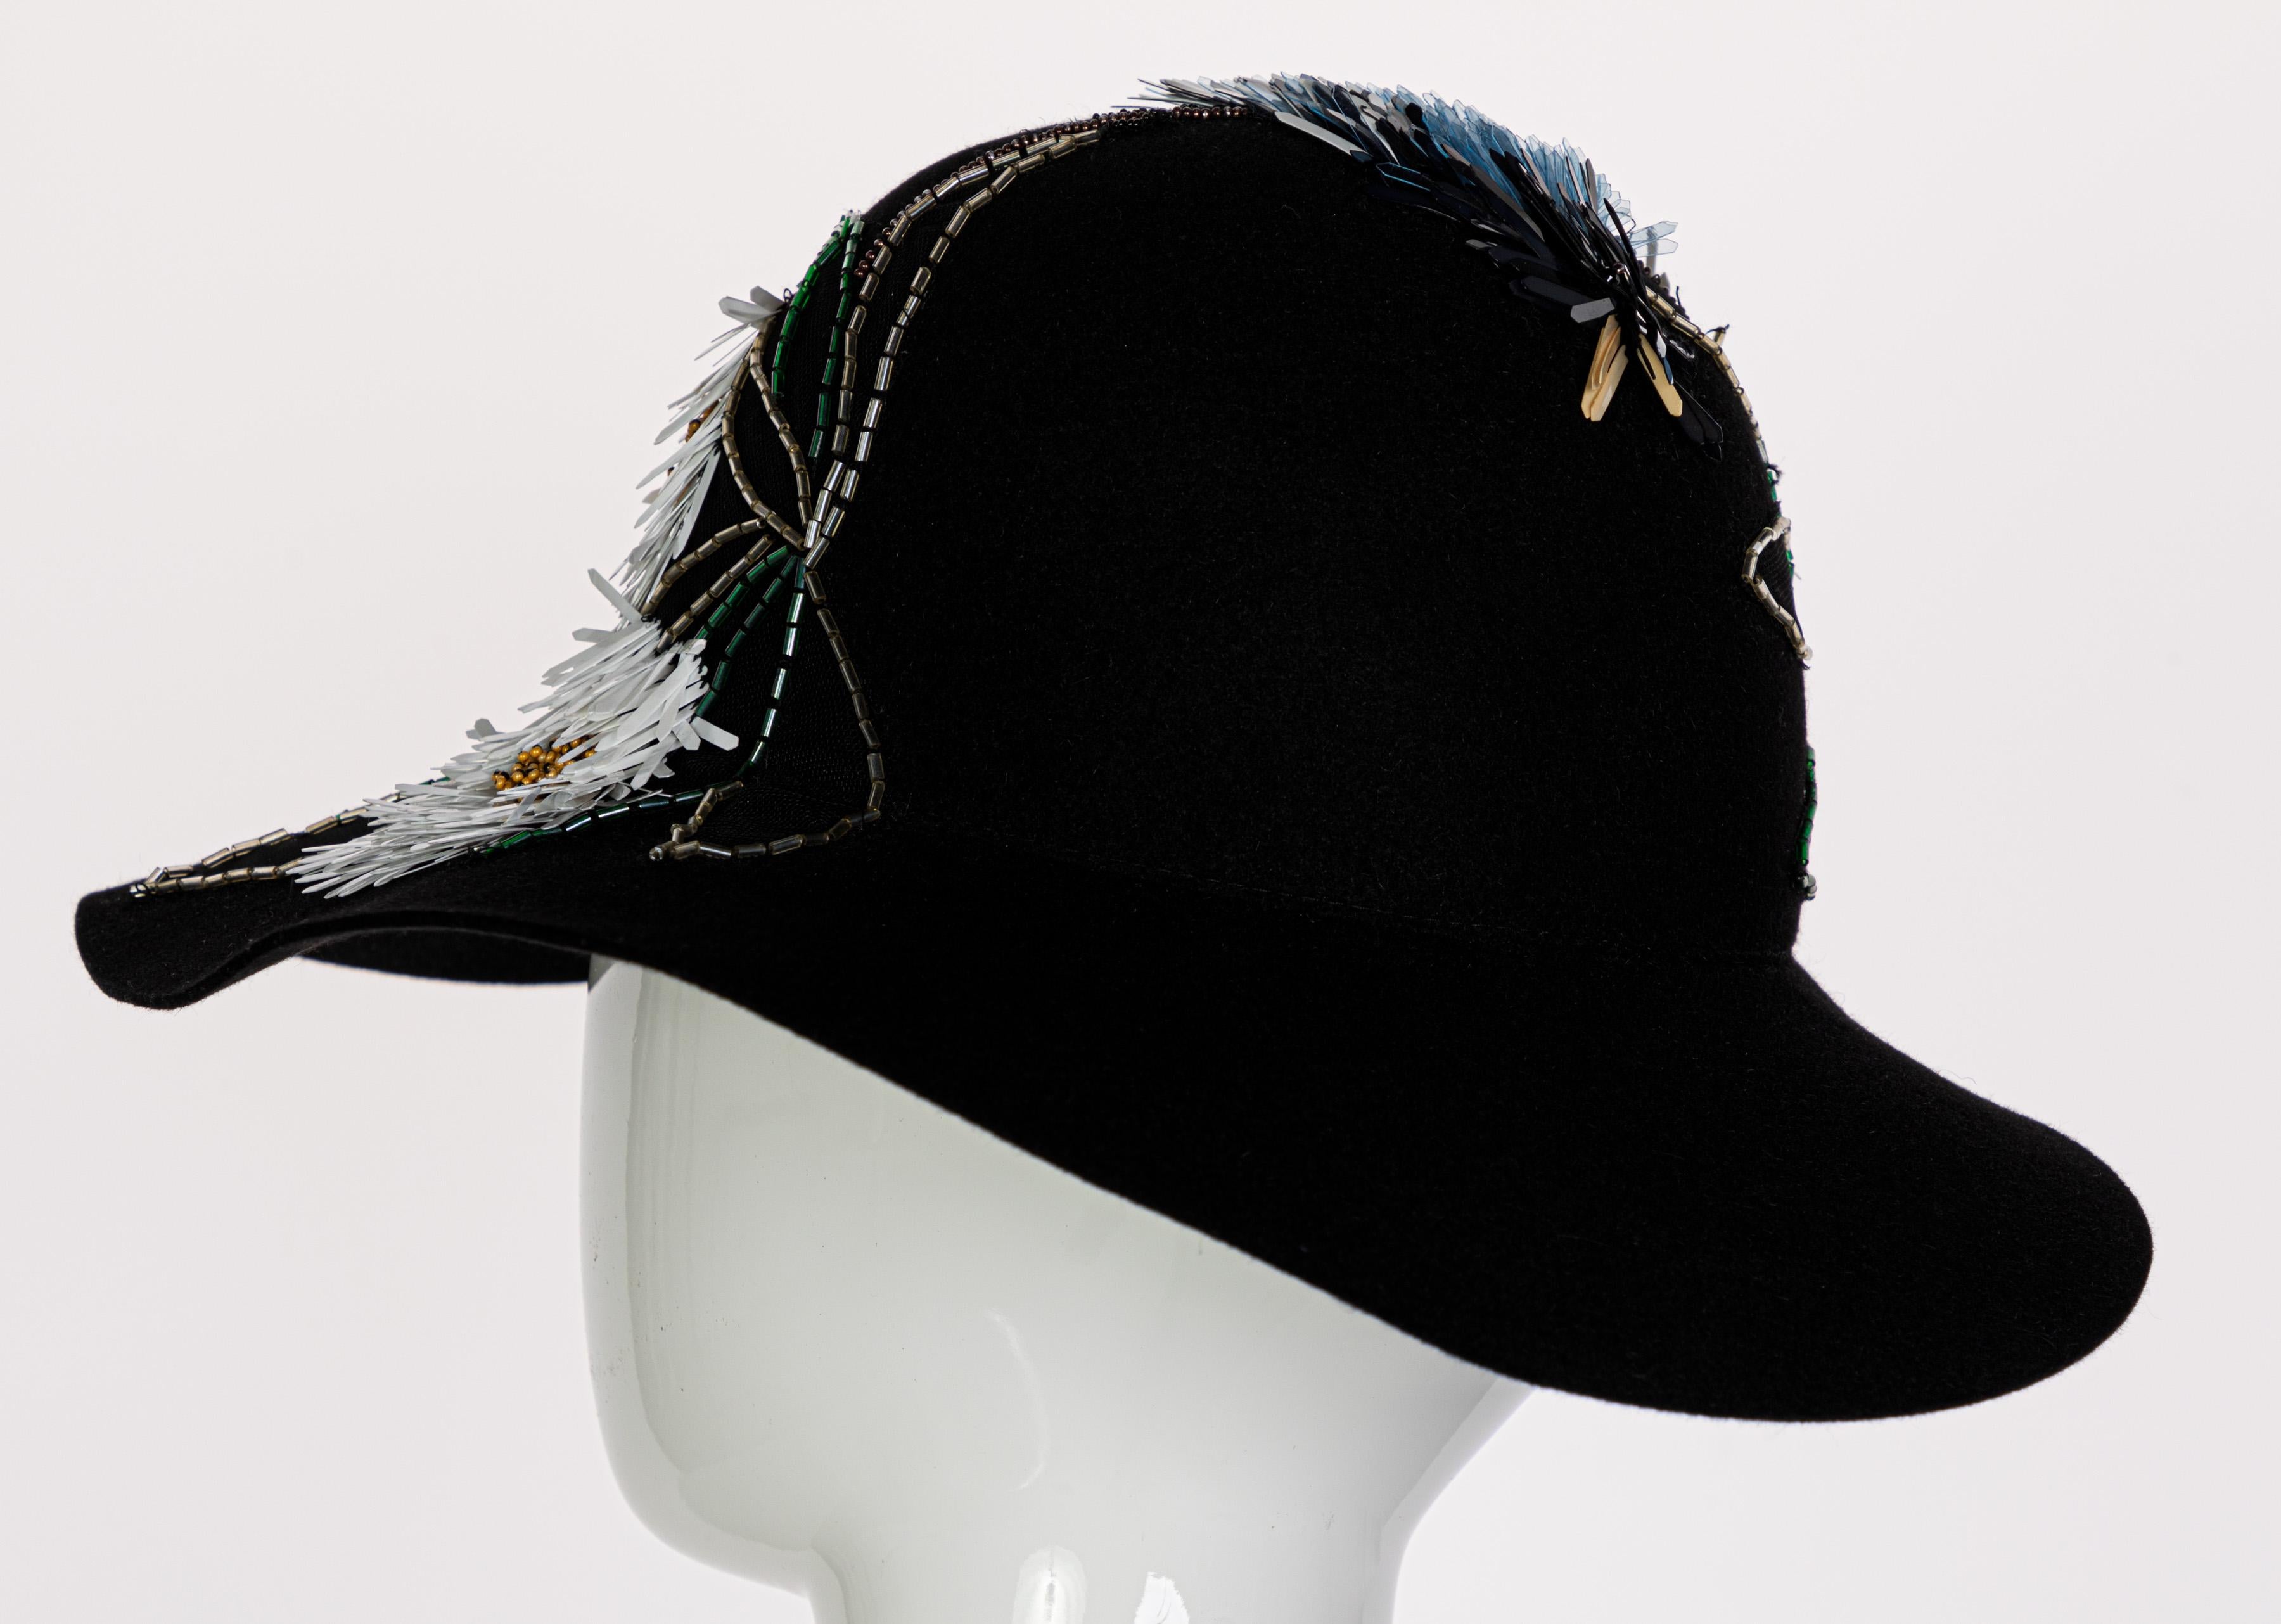 Lanvin Alber Elbaz Embellished Black Felt Hat, 2015 4